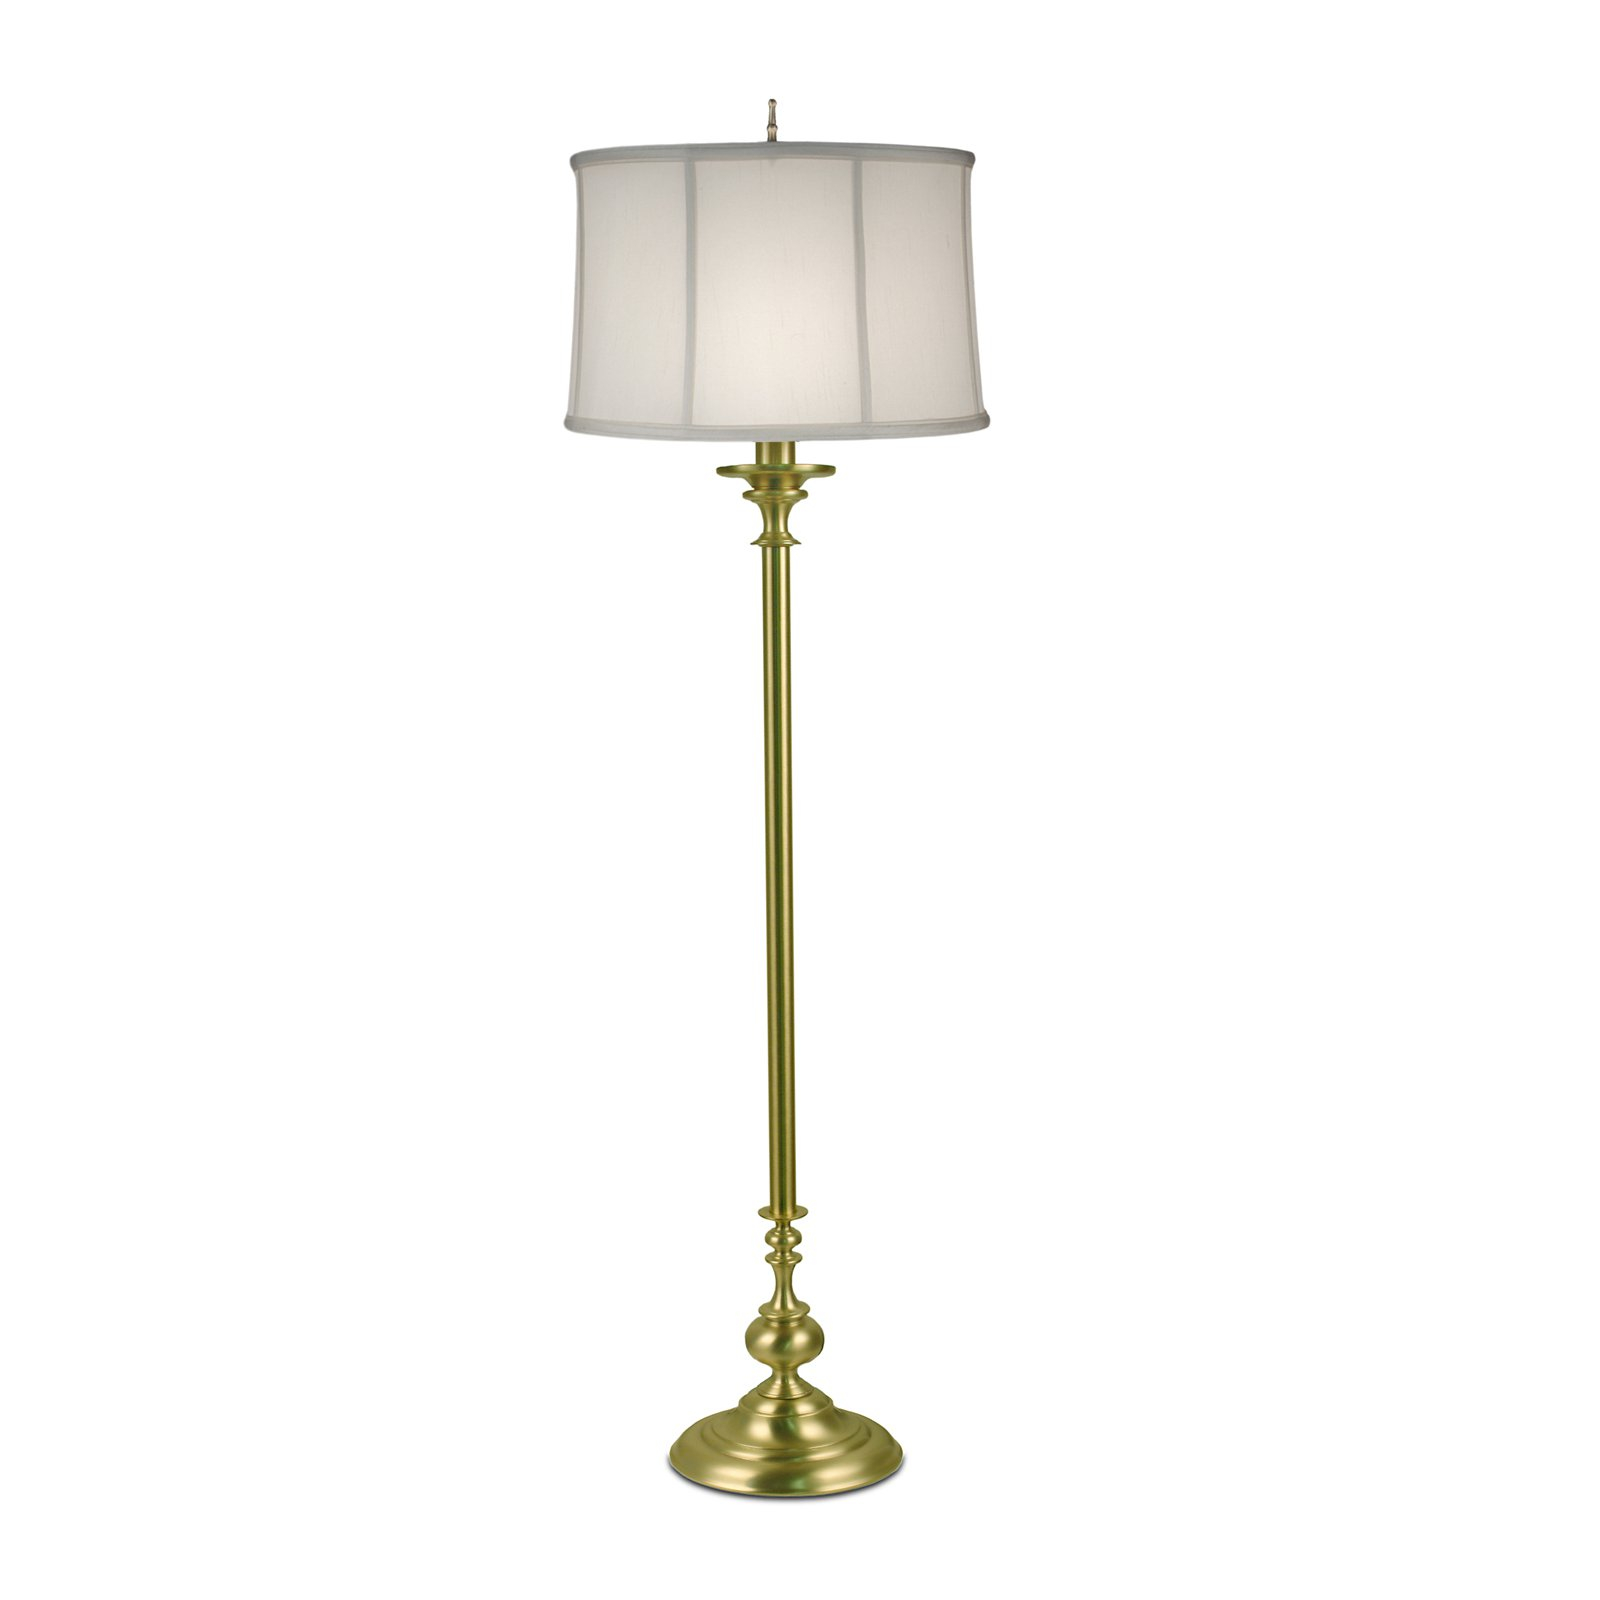 Stiffel 1320 C422 Floor Lamp Satin Brass Floor Lamps Target throughout proportions 1600 X 1600